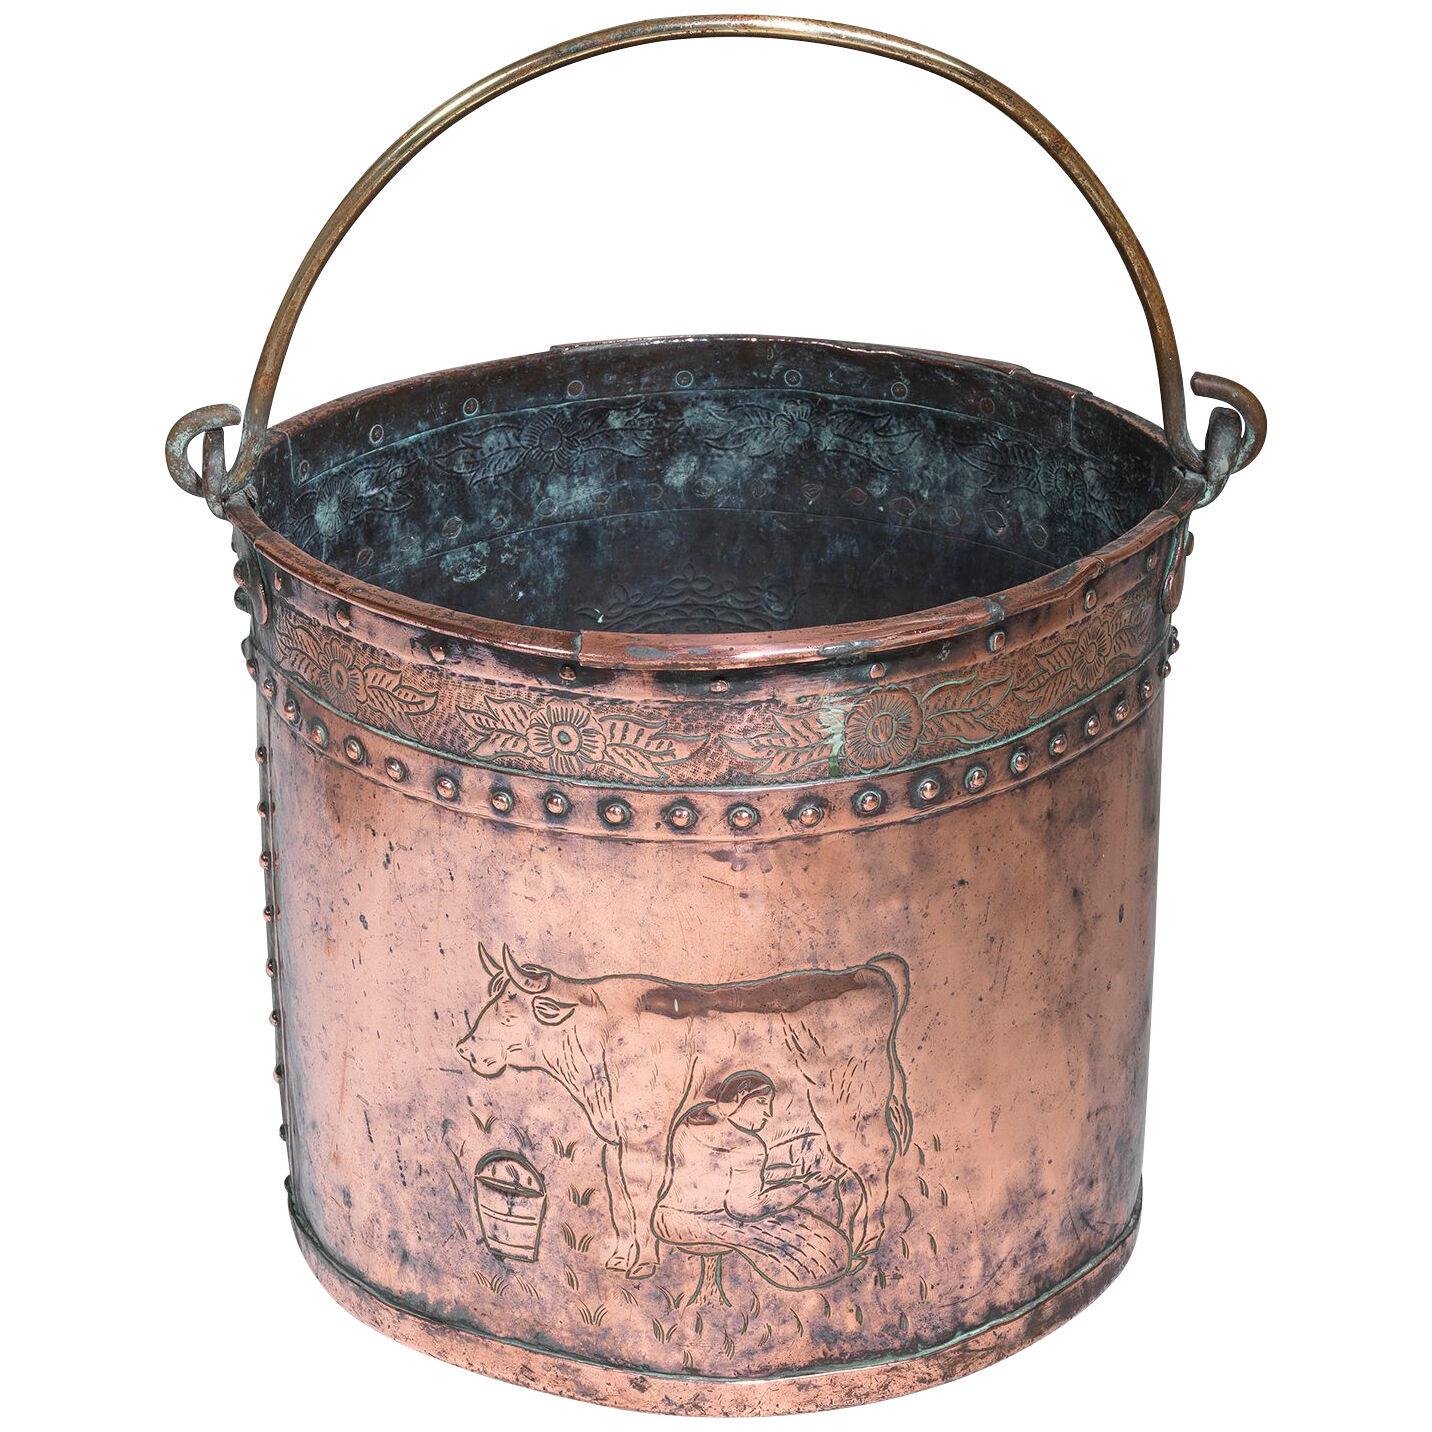 Nineteenth Century copper coal bucket